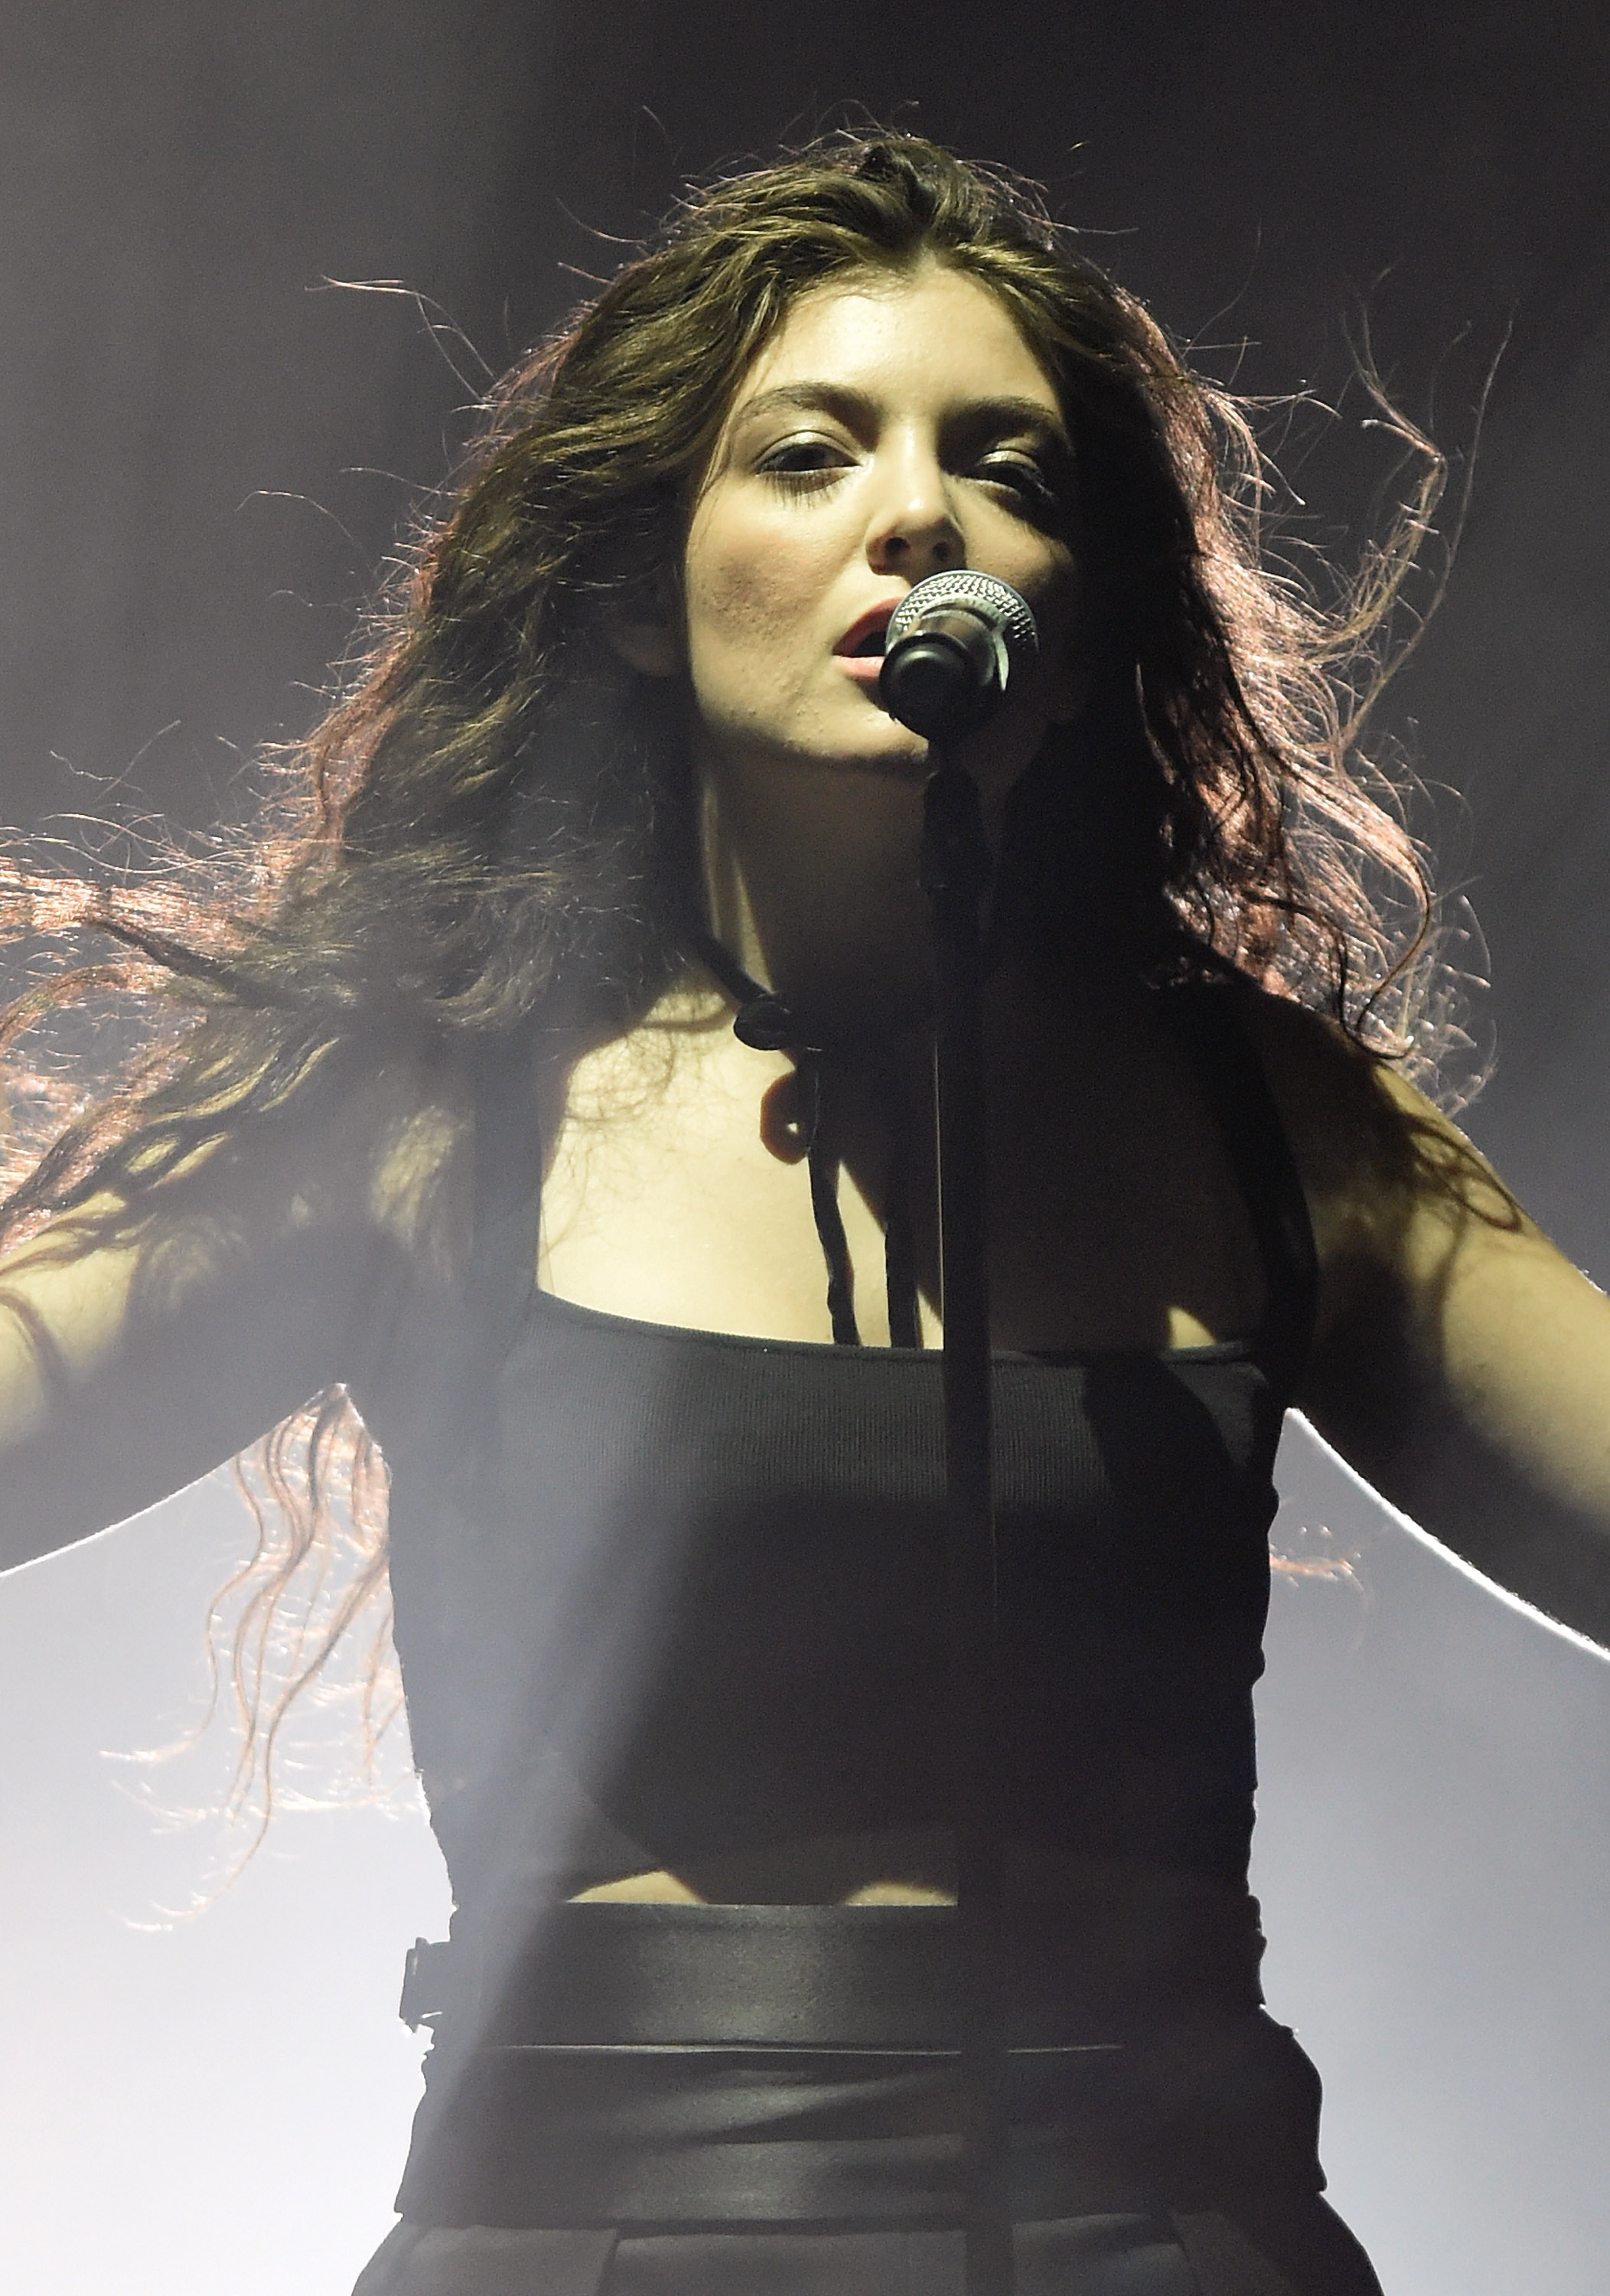 San Francisco radio stations ban 'Royals' song by Lorde